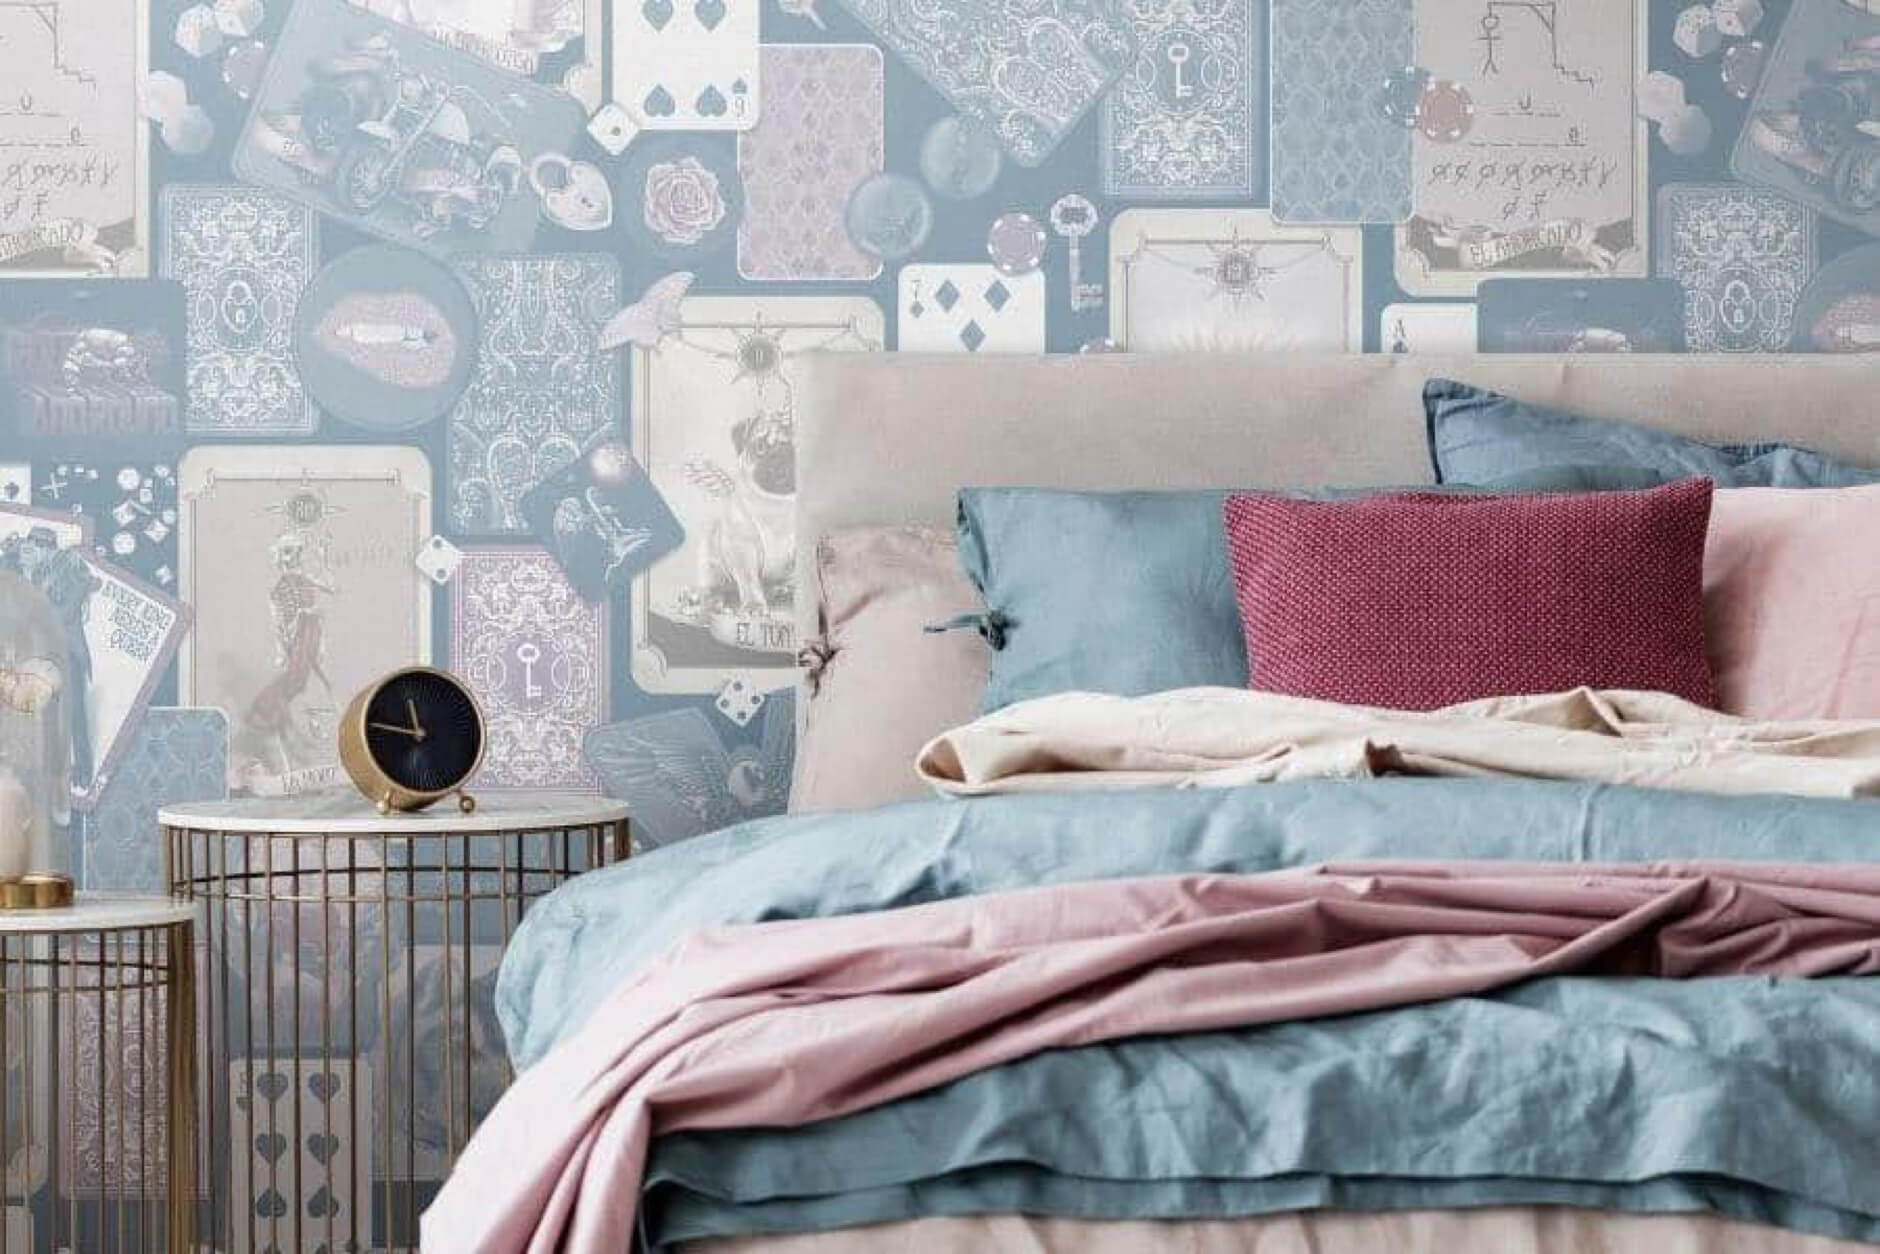 Dùng giấy dán tường để trang trí phòng ngủ đơn giản cho nữ